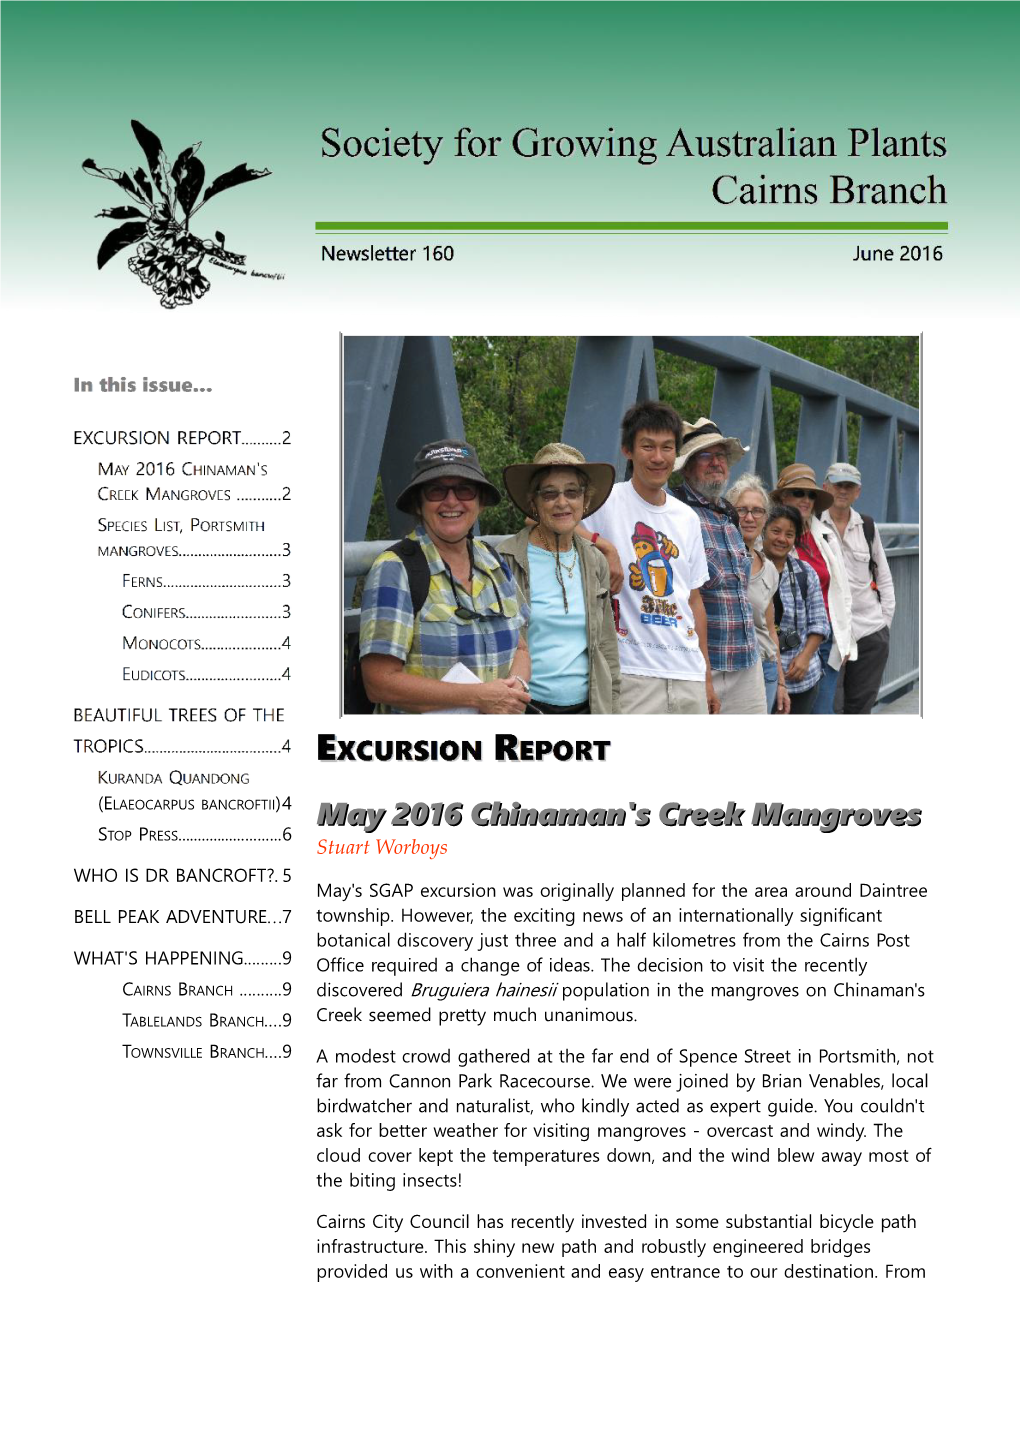 May 2016 Chinaman's Creek Mangroves STOP PRESS